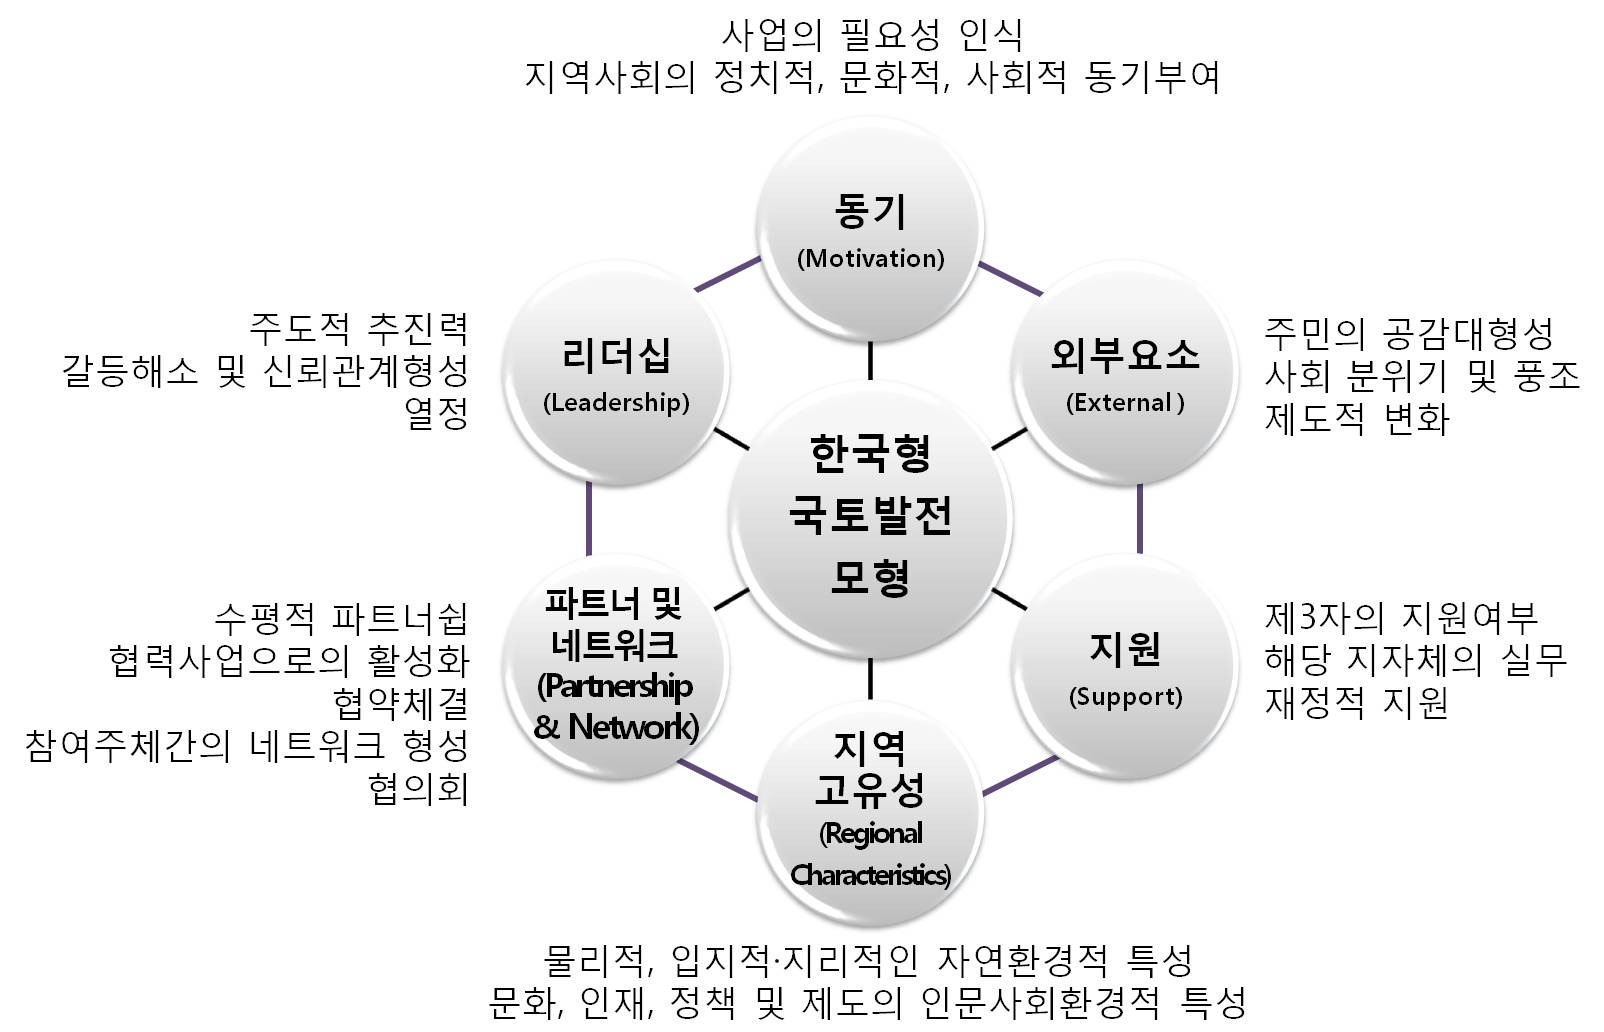 한국형 국토발전모형 실천을 위한 핵심요소